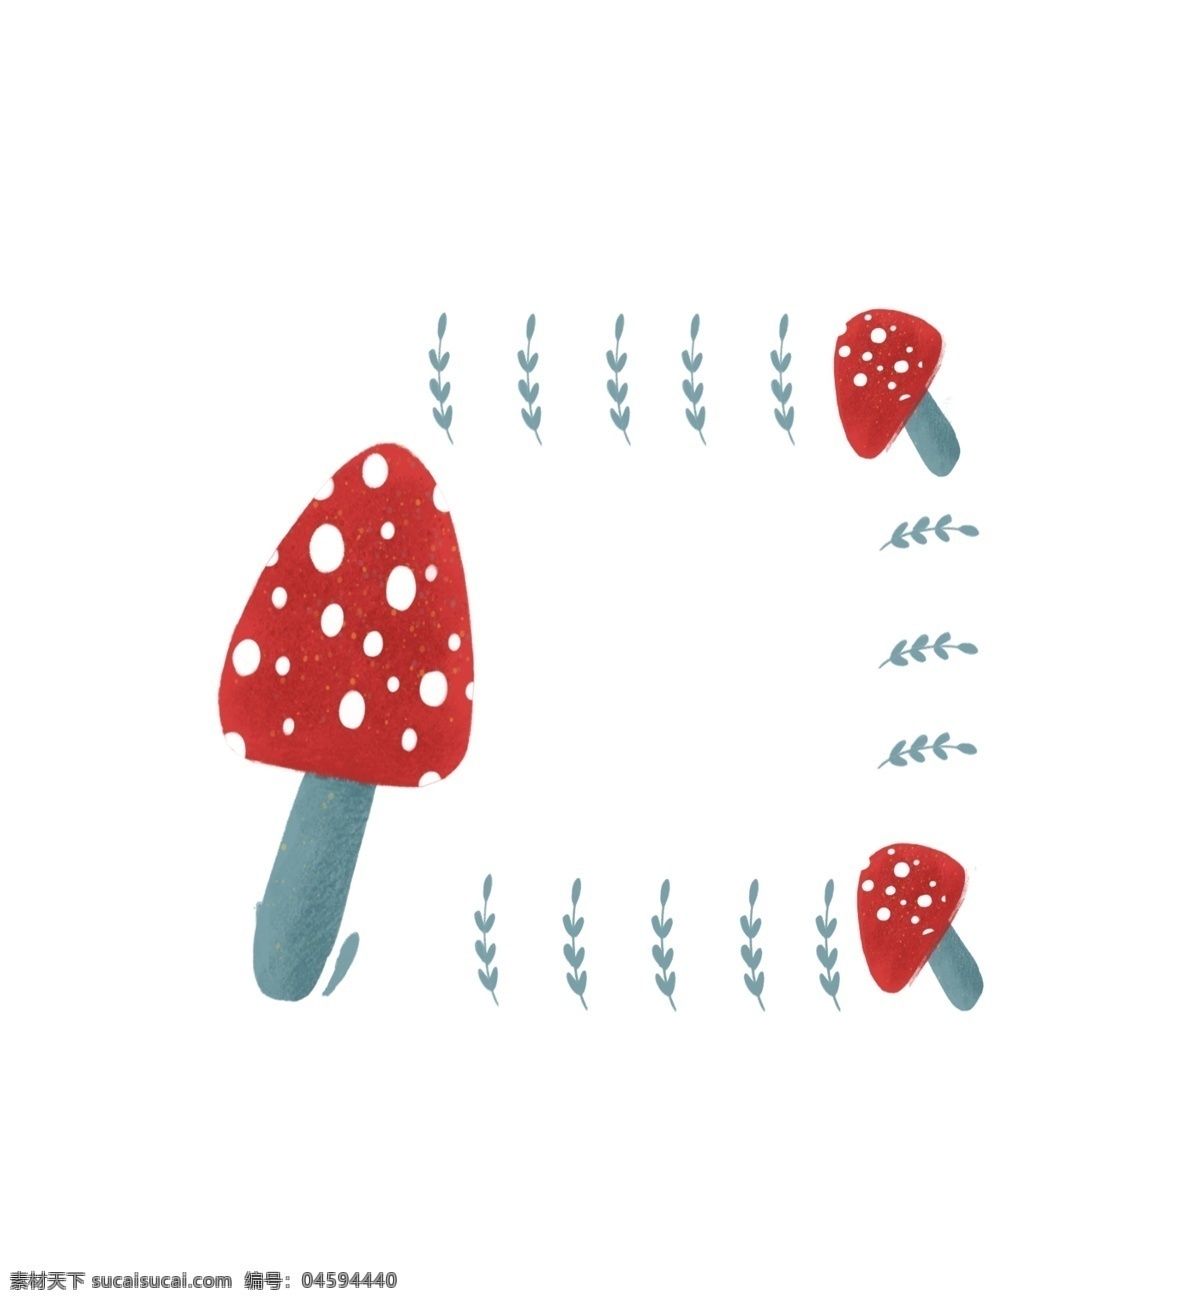 卡通 蘑菇 边框 插画 卡通边框 蘑菇边框 红色边框 边框插图 创意边框 可爱 插图